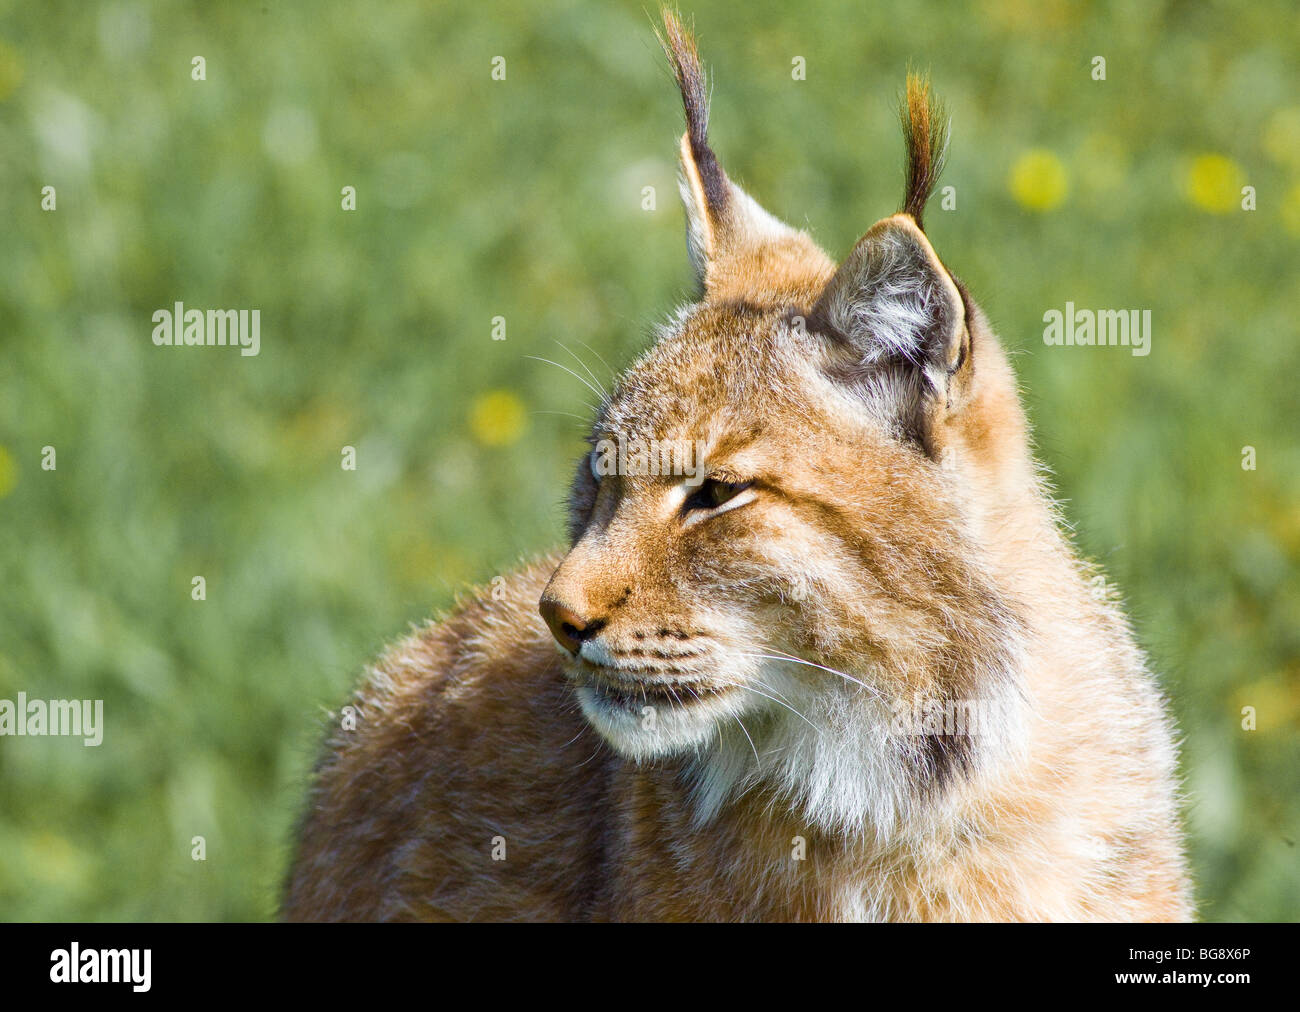 Disparition de beaux lynx pardinus ou Lynx pardina aka lynx ibérique Banque D'Images